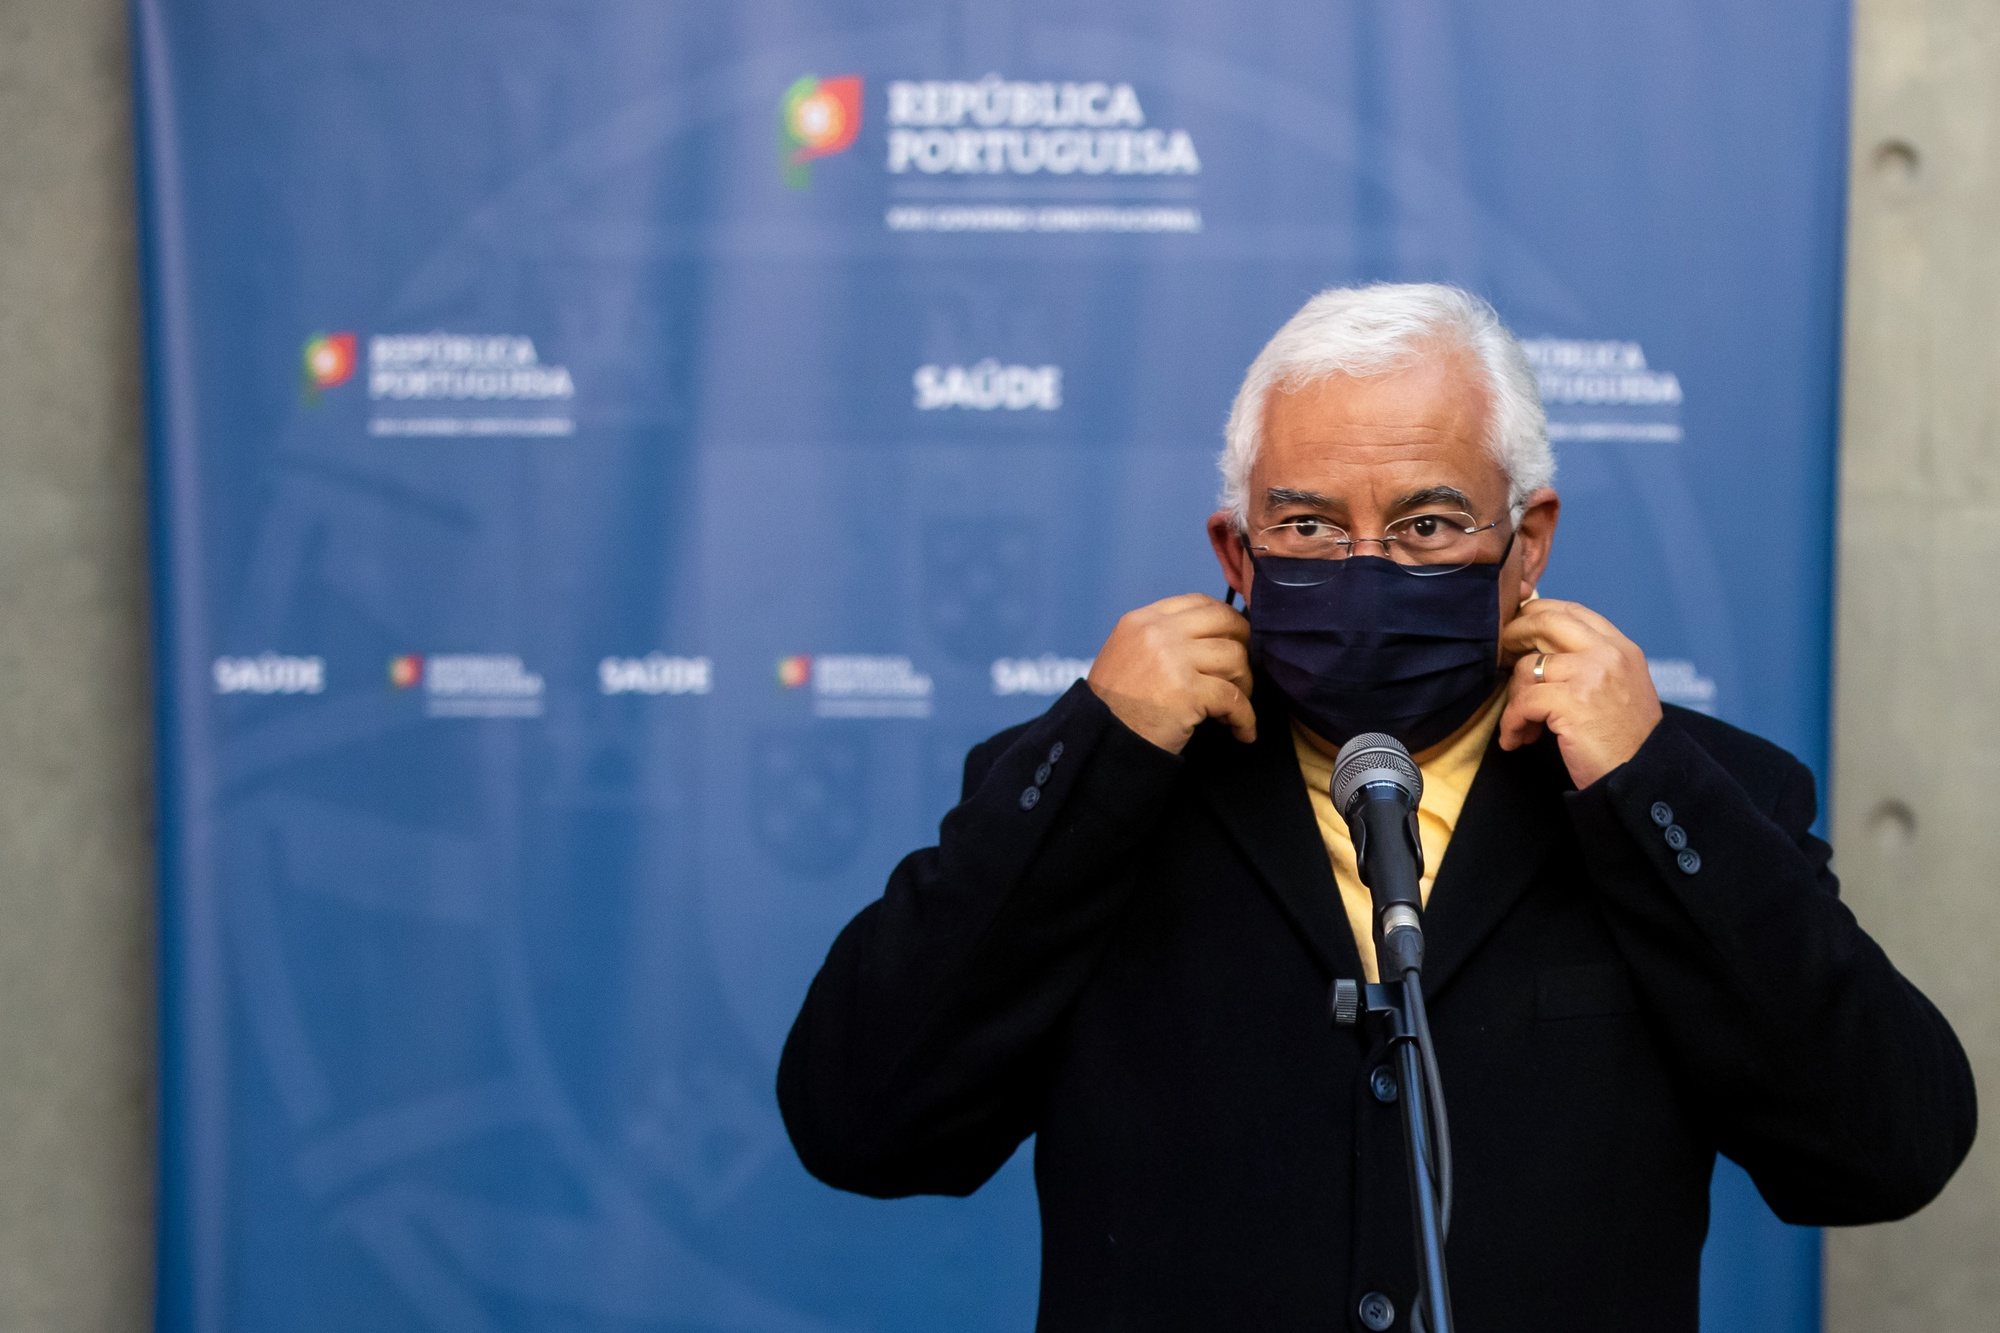 O primeiro-ministro, António Costa, retira a máscara protetora contra a Covid-19 antes de prestar declarações aos jornalistas após a 14ª sessão de apresentação da “Situação epidemiológica da Covid-19 em Portugal”, na sede do Infarmed, em Lisboa, 12 de janeiro de 2021. JOSÉ SENA GOULÃO/LUSA